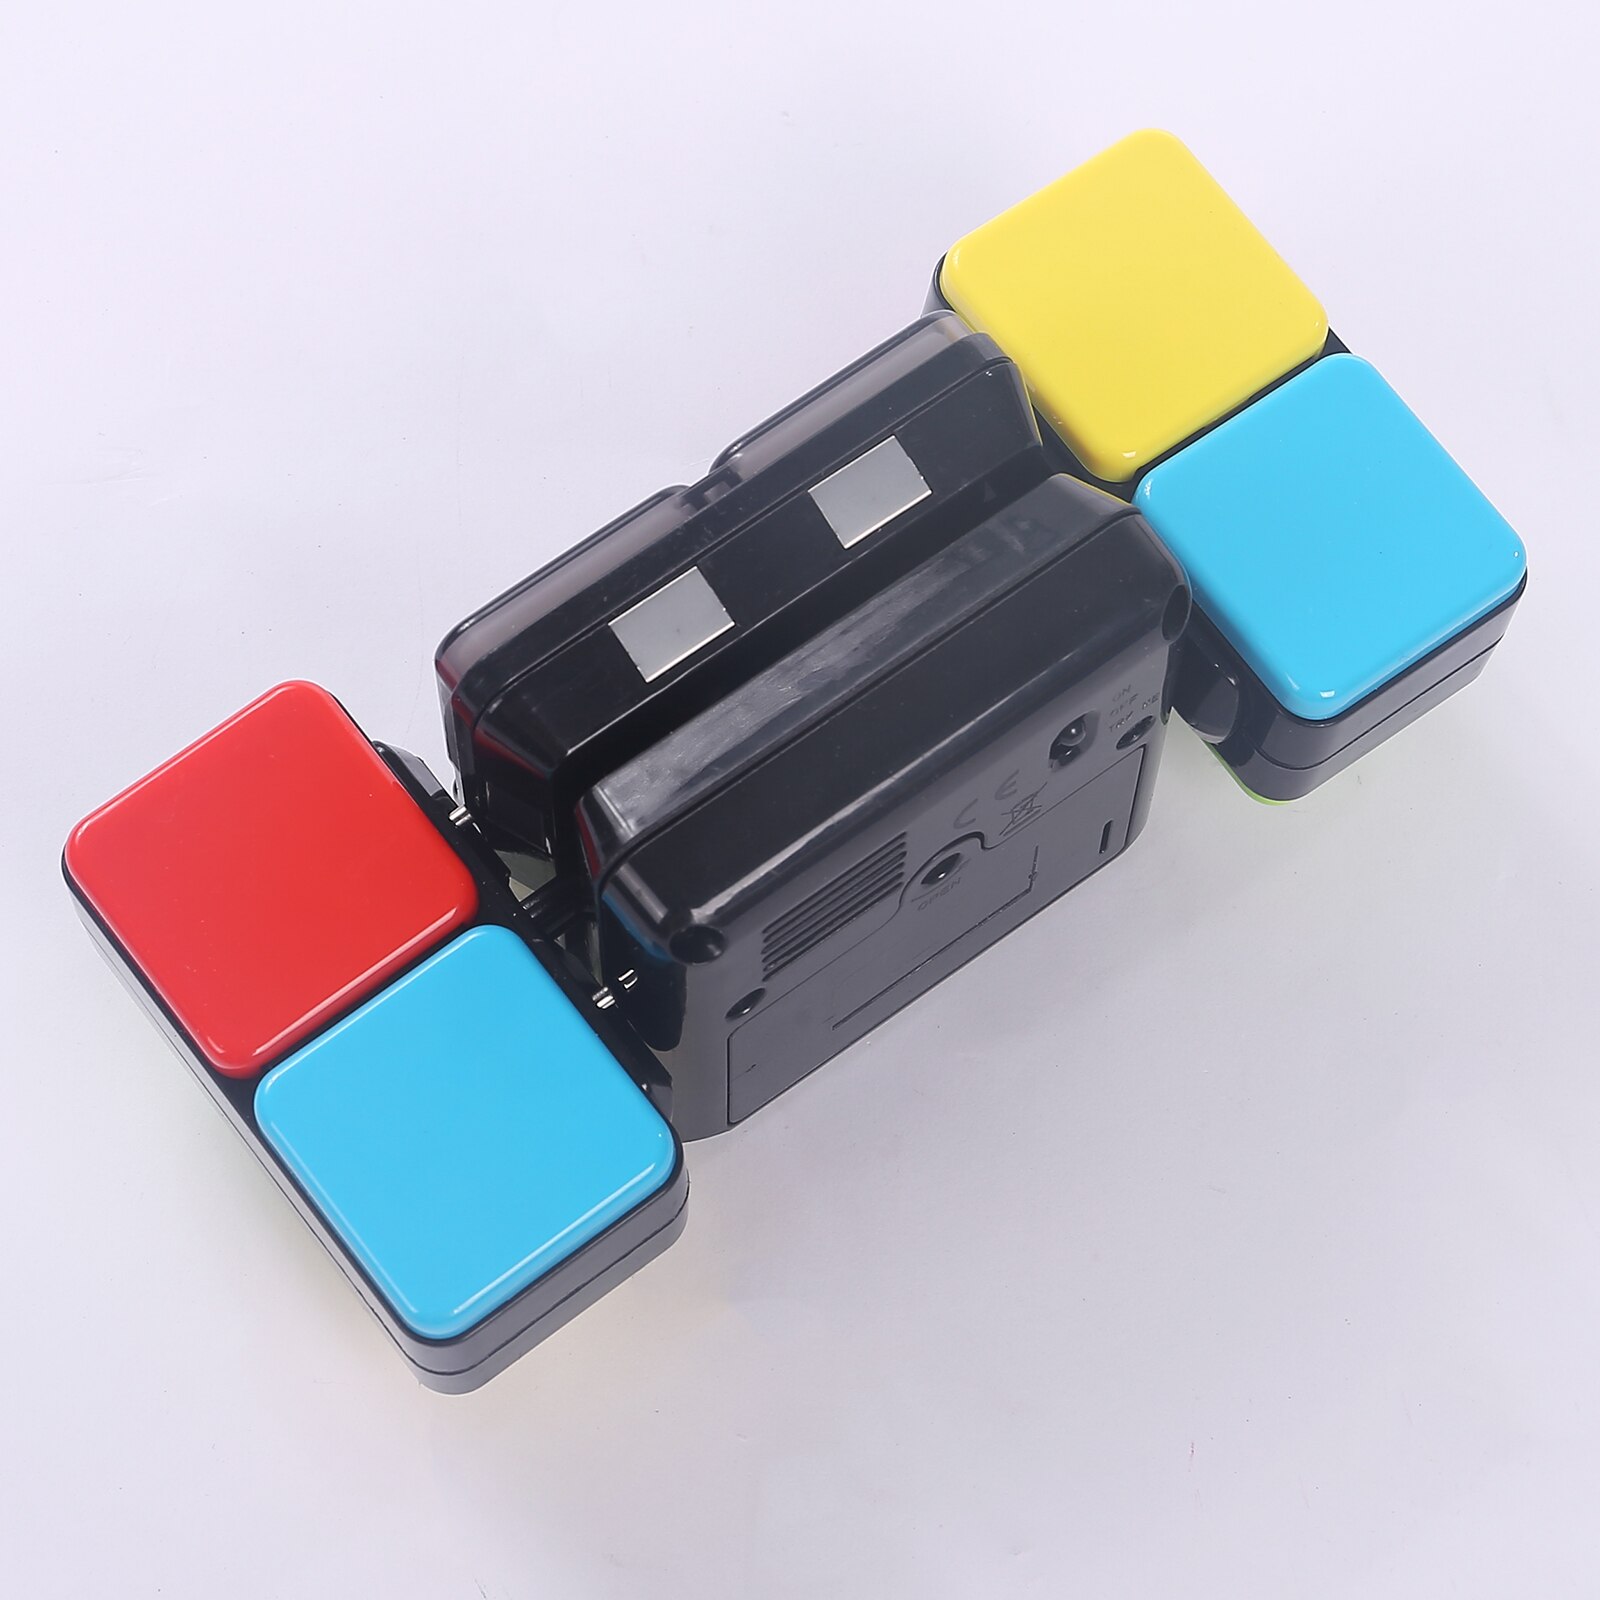 Giocattoli elettrici musicali in plastica multicolore con luci e musica, giocattoli cubi musicali leggeri per bambini e adulti